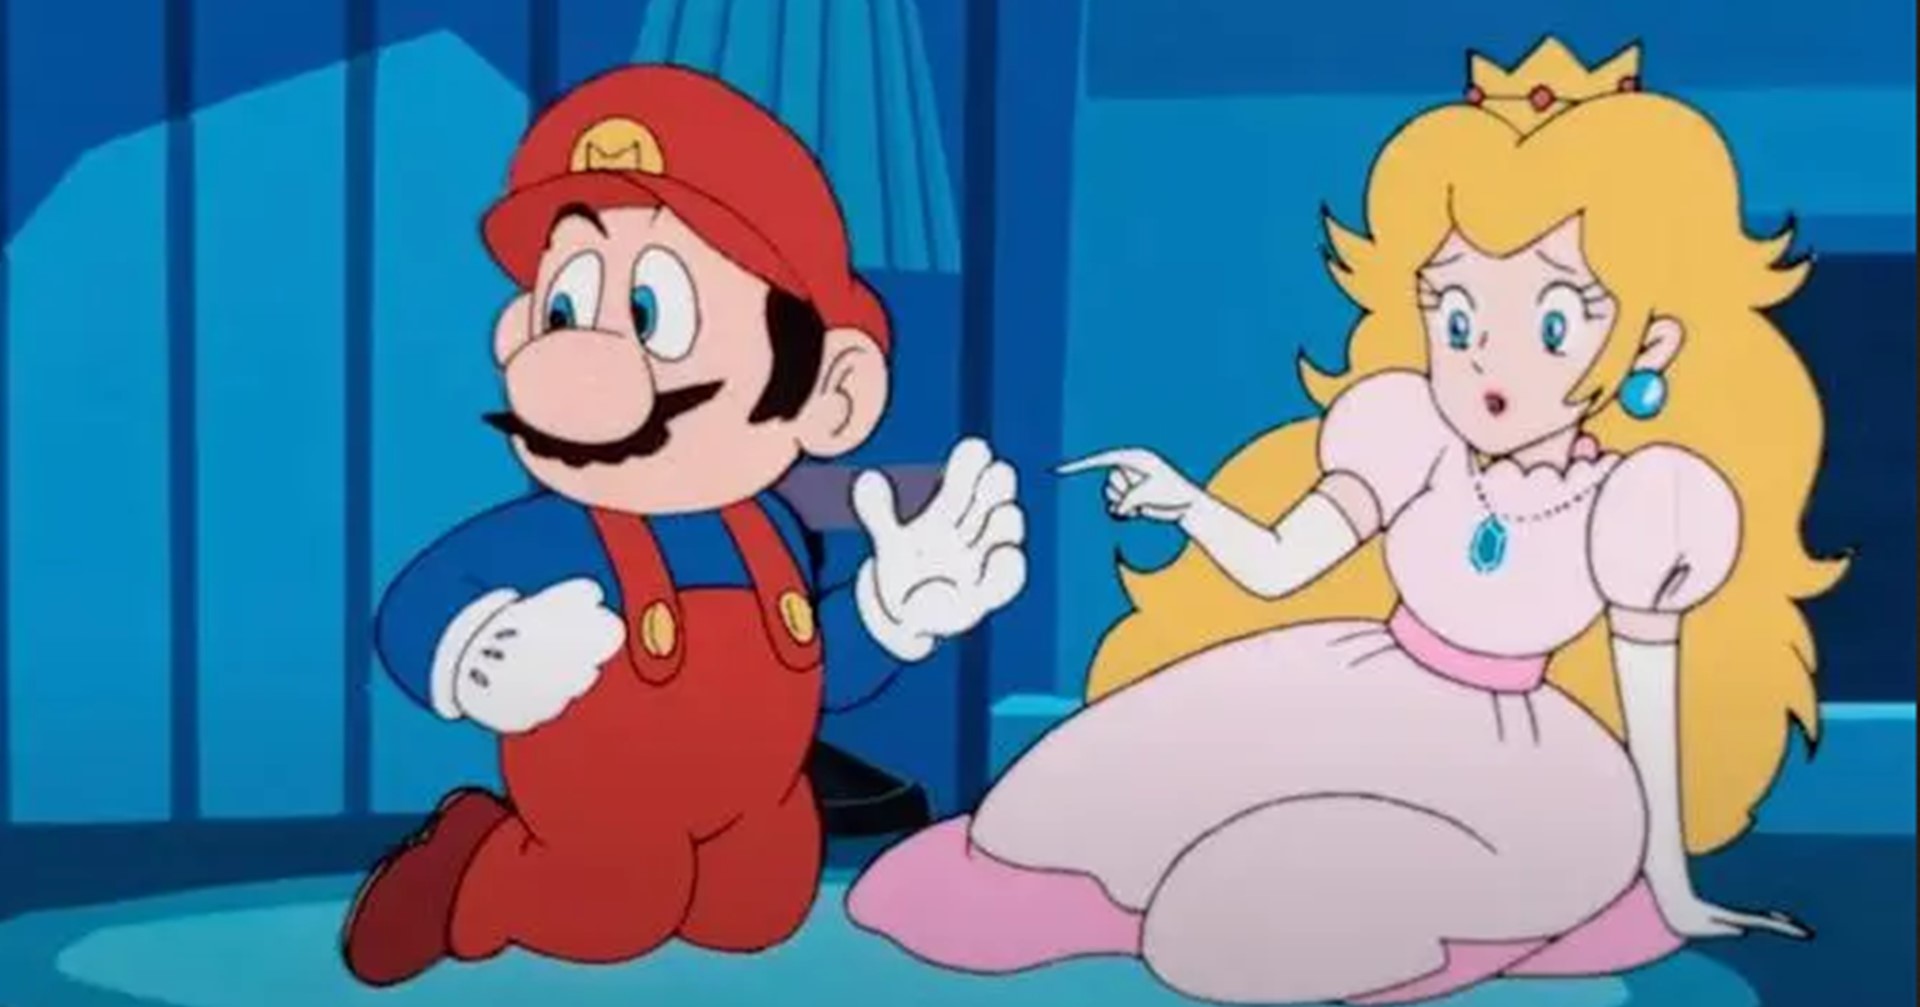 การ์ตูนจากเกม Mario ภาคแรกถูกแฟน ๆ รีมาสเตอร์แบบ 4K